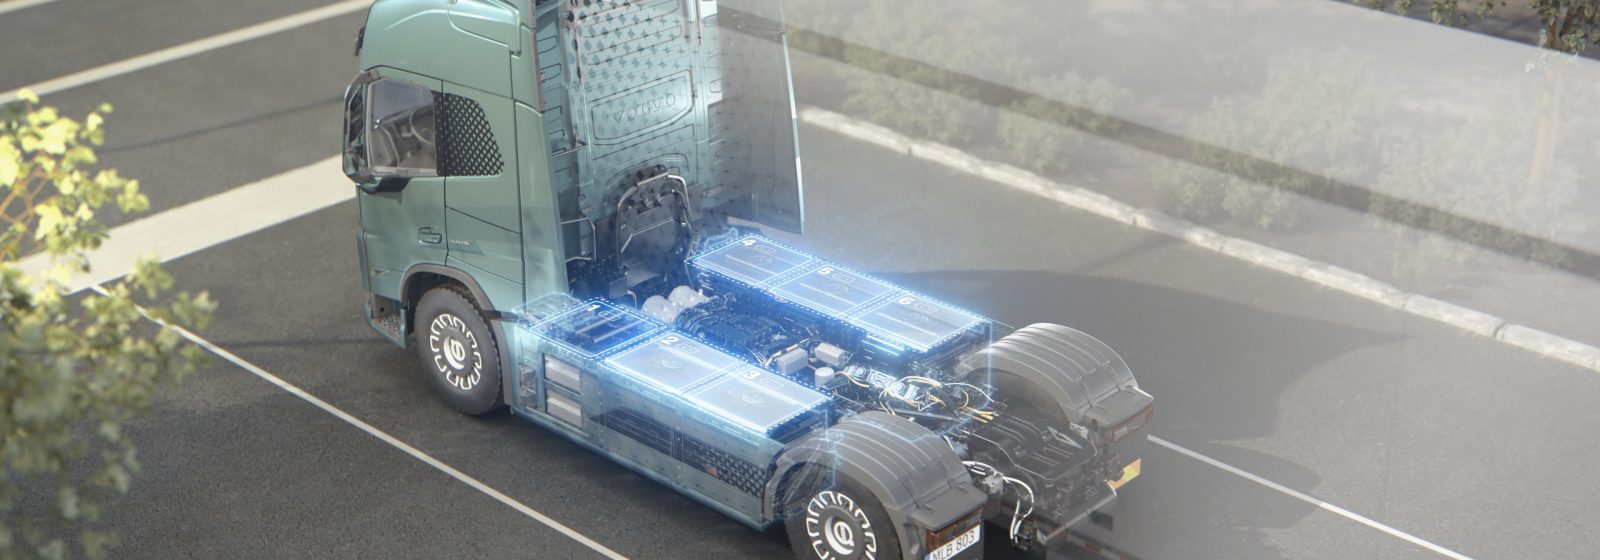 20220517 Volvo Trucks elektrische truck met batterijen